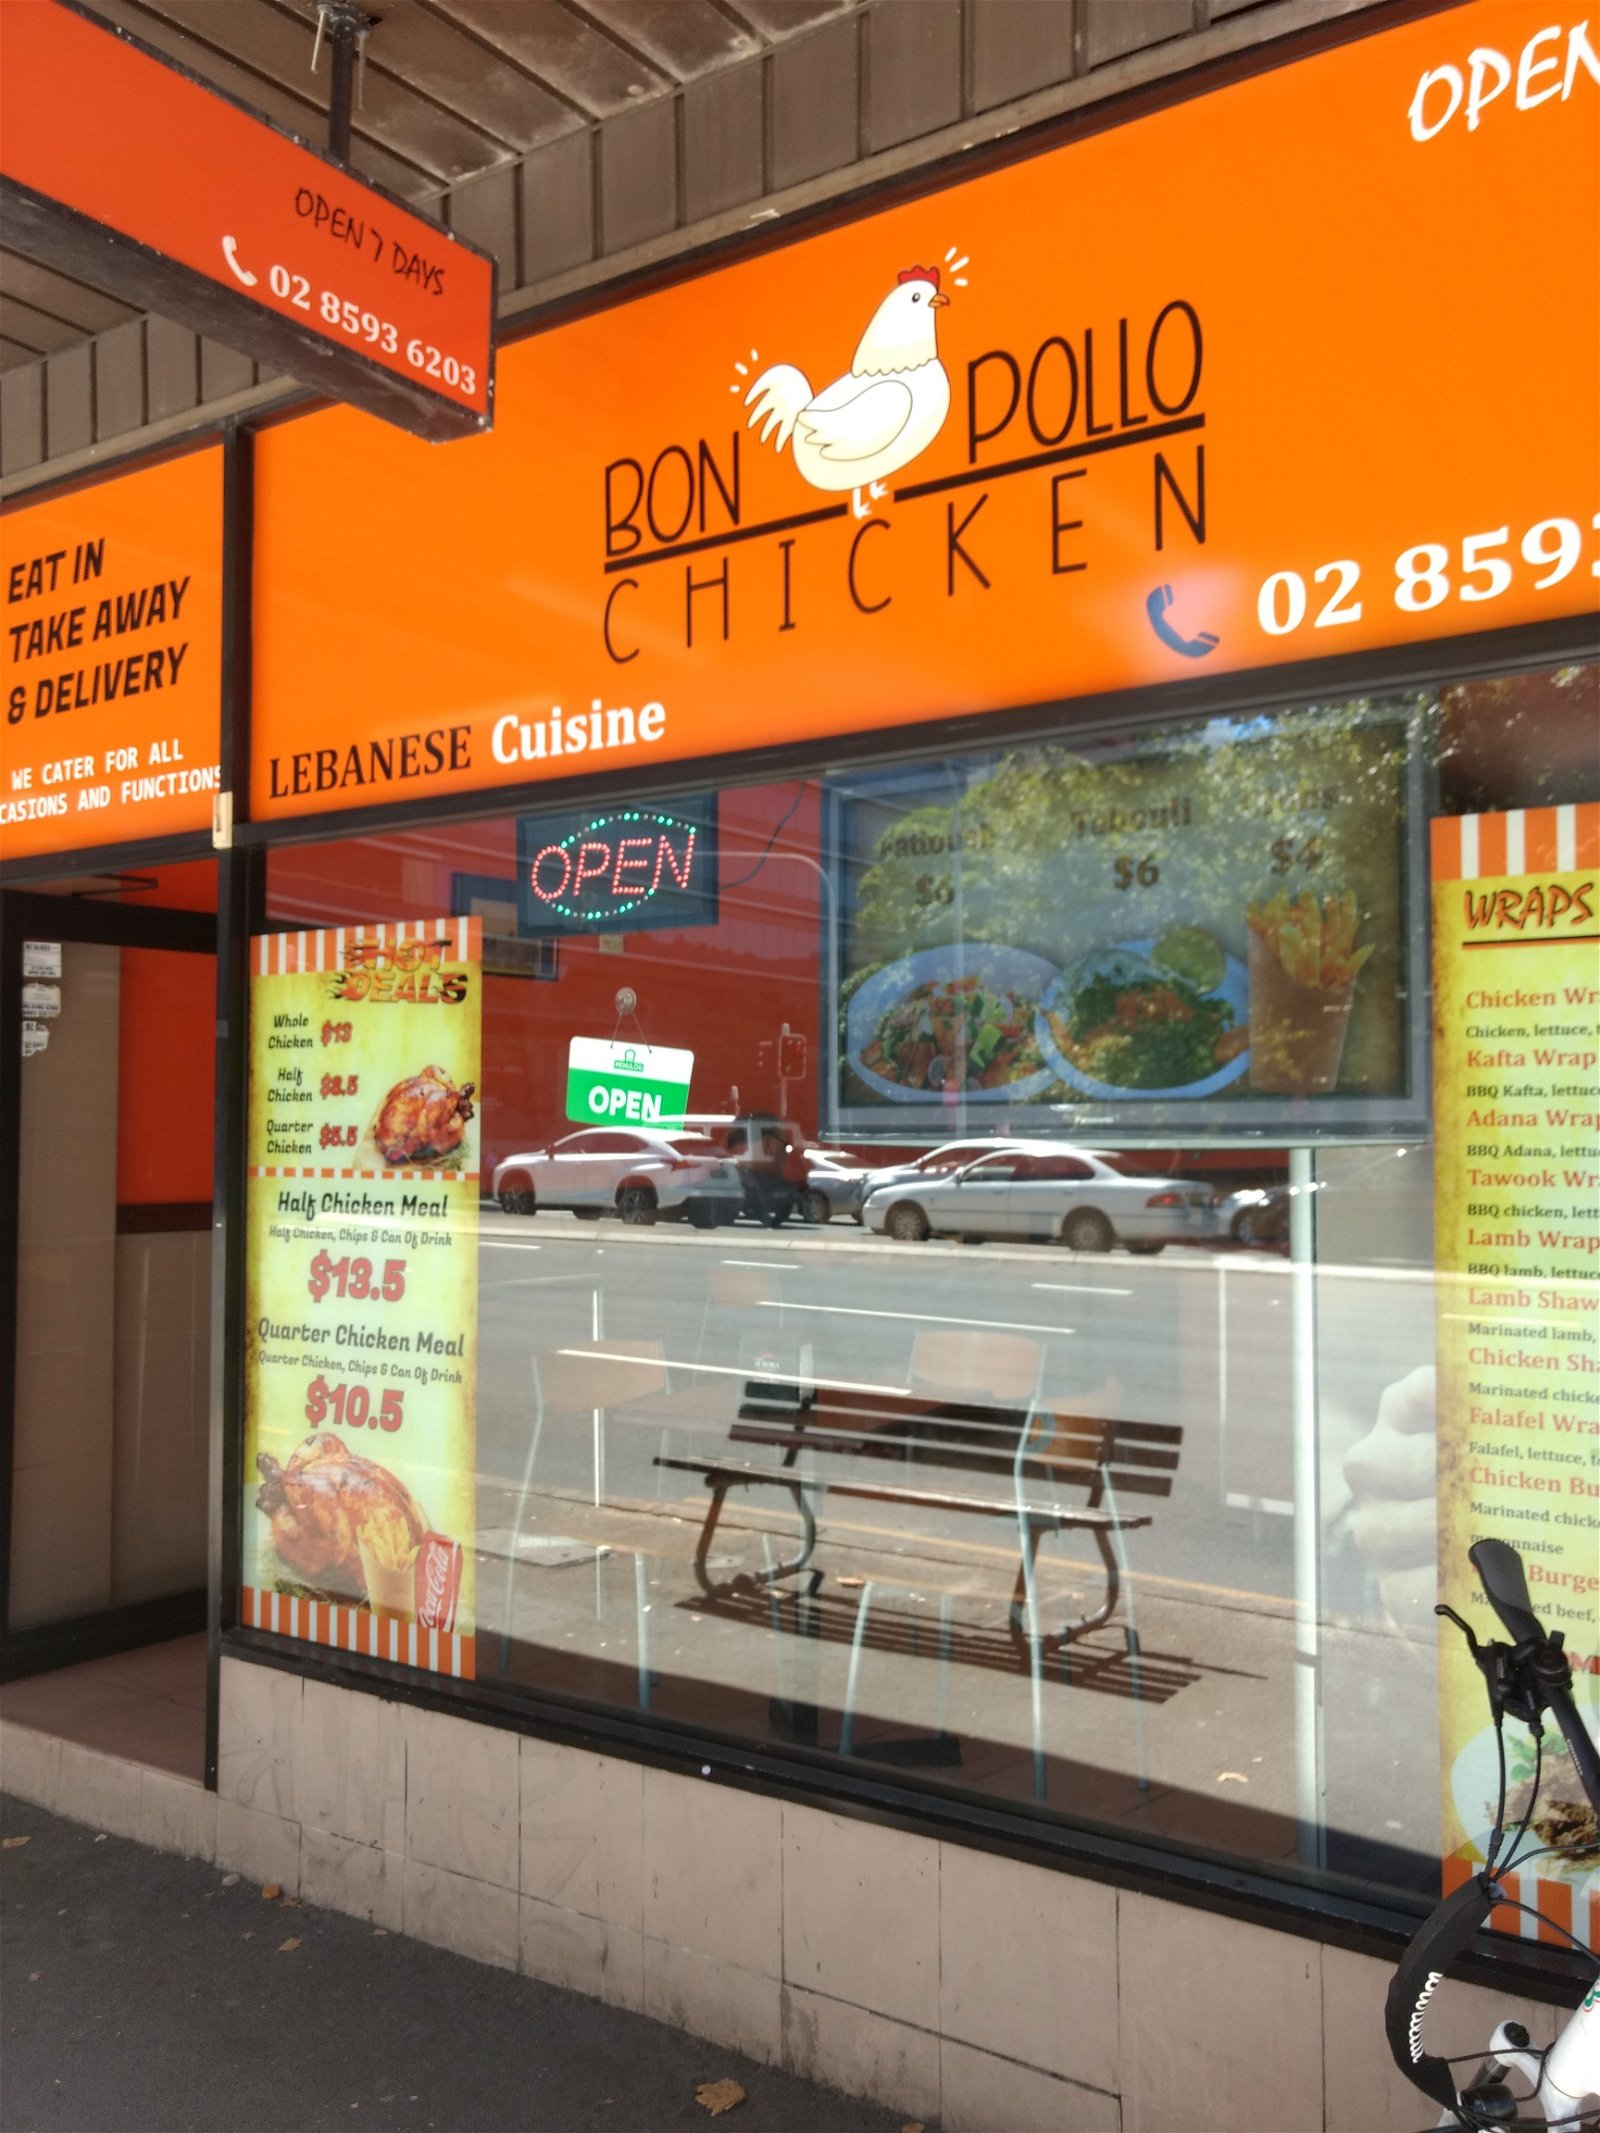 Bon Pollo Chicken - Food Delivery Shop